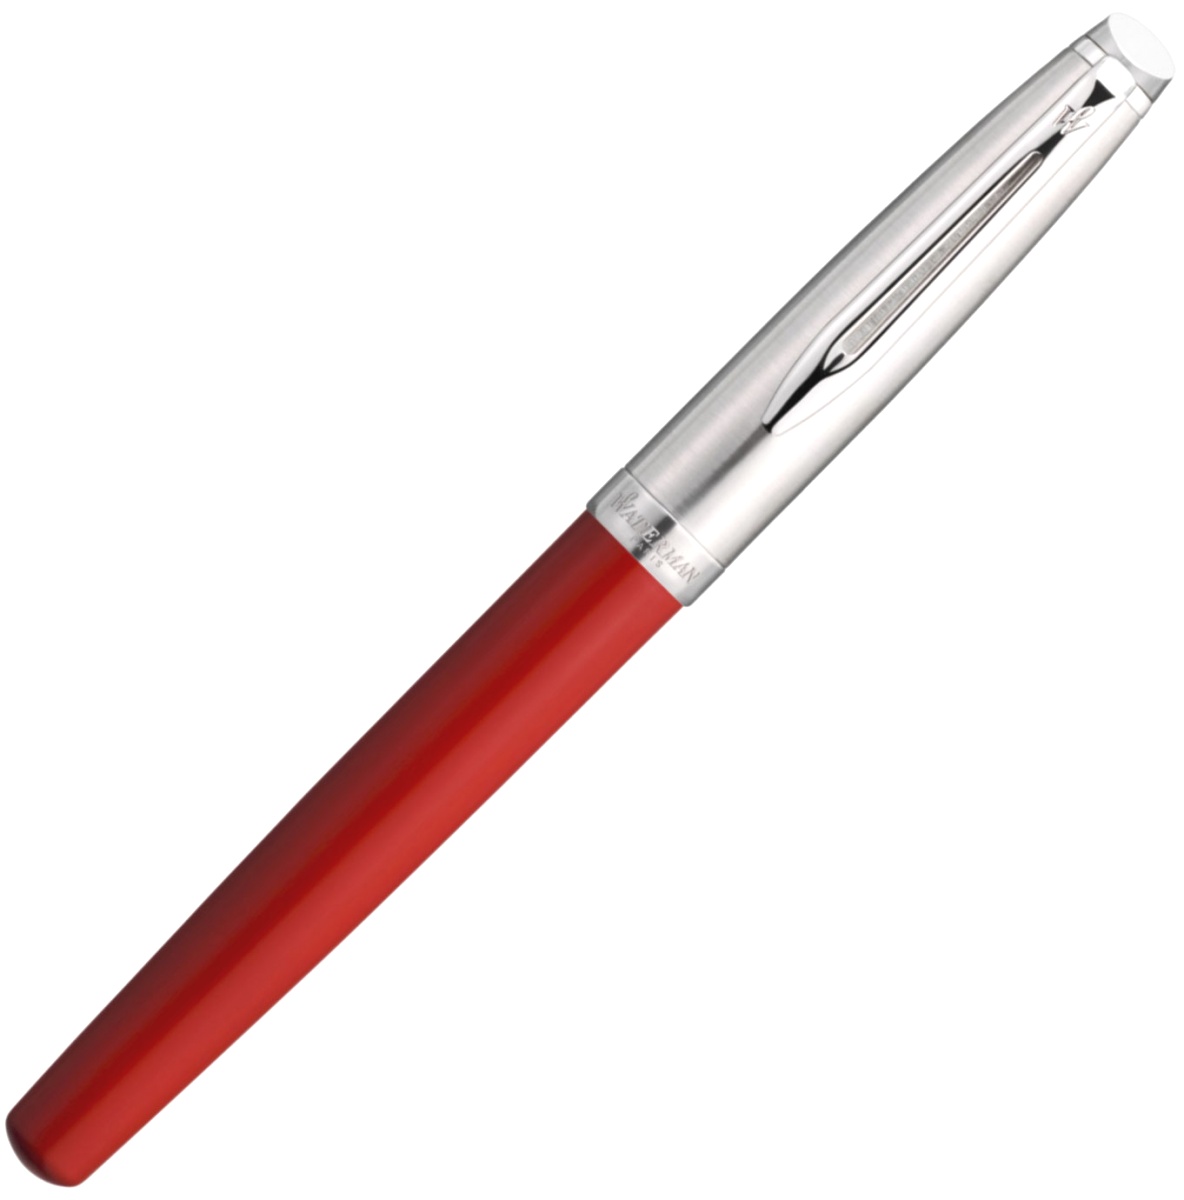  Ручка перьевая Waterman Embleme 2.0, Red CT (Перо M), фото 2